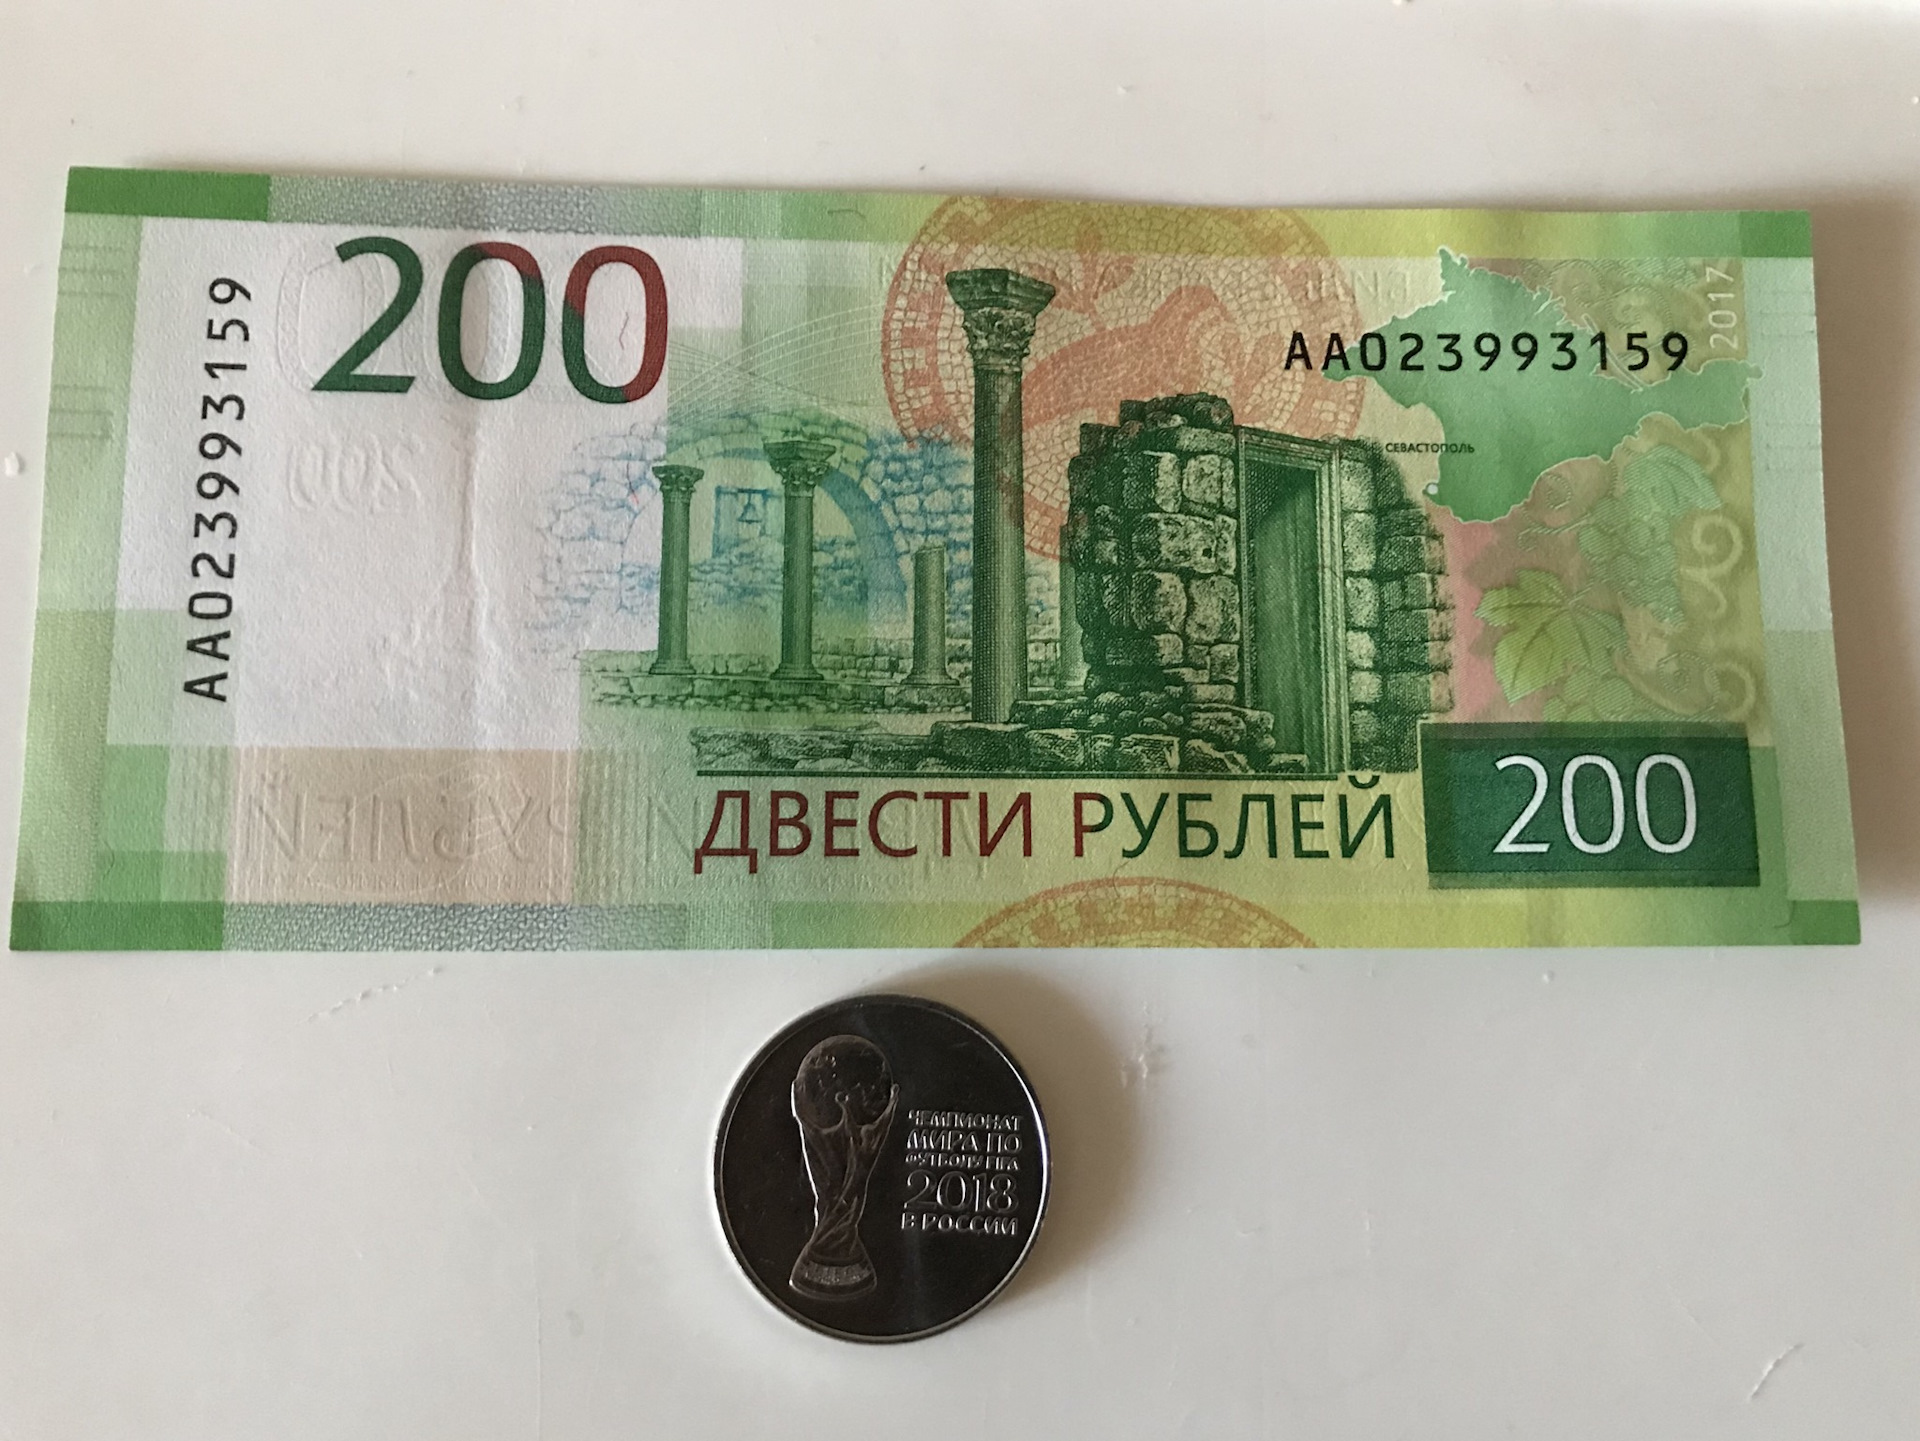 200 рублей словами. 200 Рублей. 200 Рублей юбилейные. Двести рублей юбилейные. Памятные 200 руб.